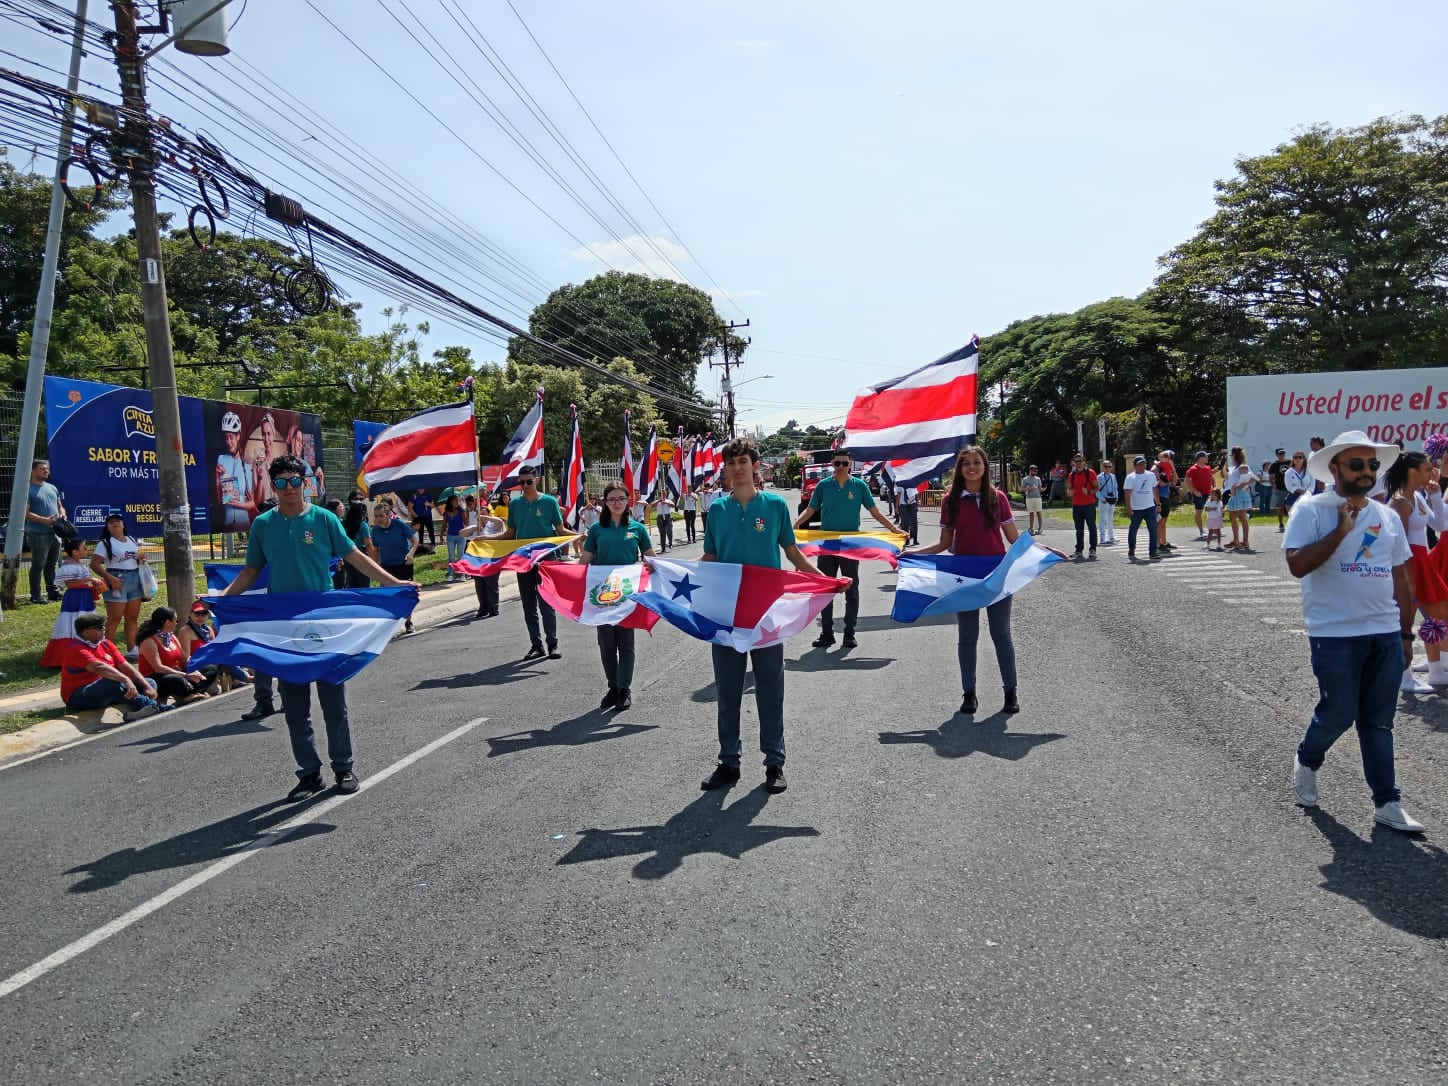 Las banderas de varios países latinoamericanos estuvieron presentes en el desfiles. Foto de Ana Yancy Arce.